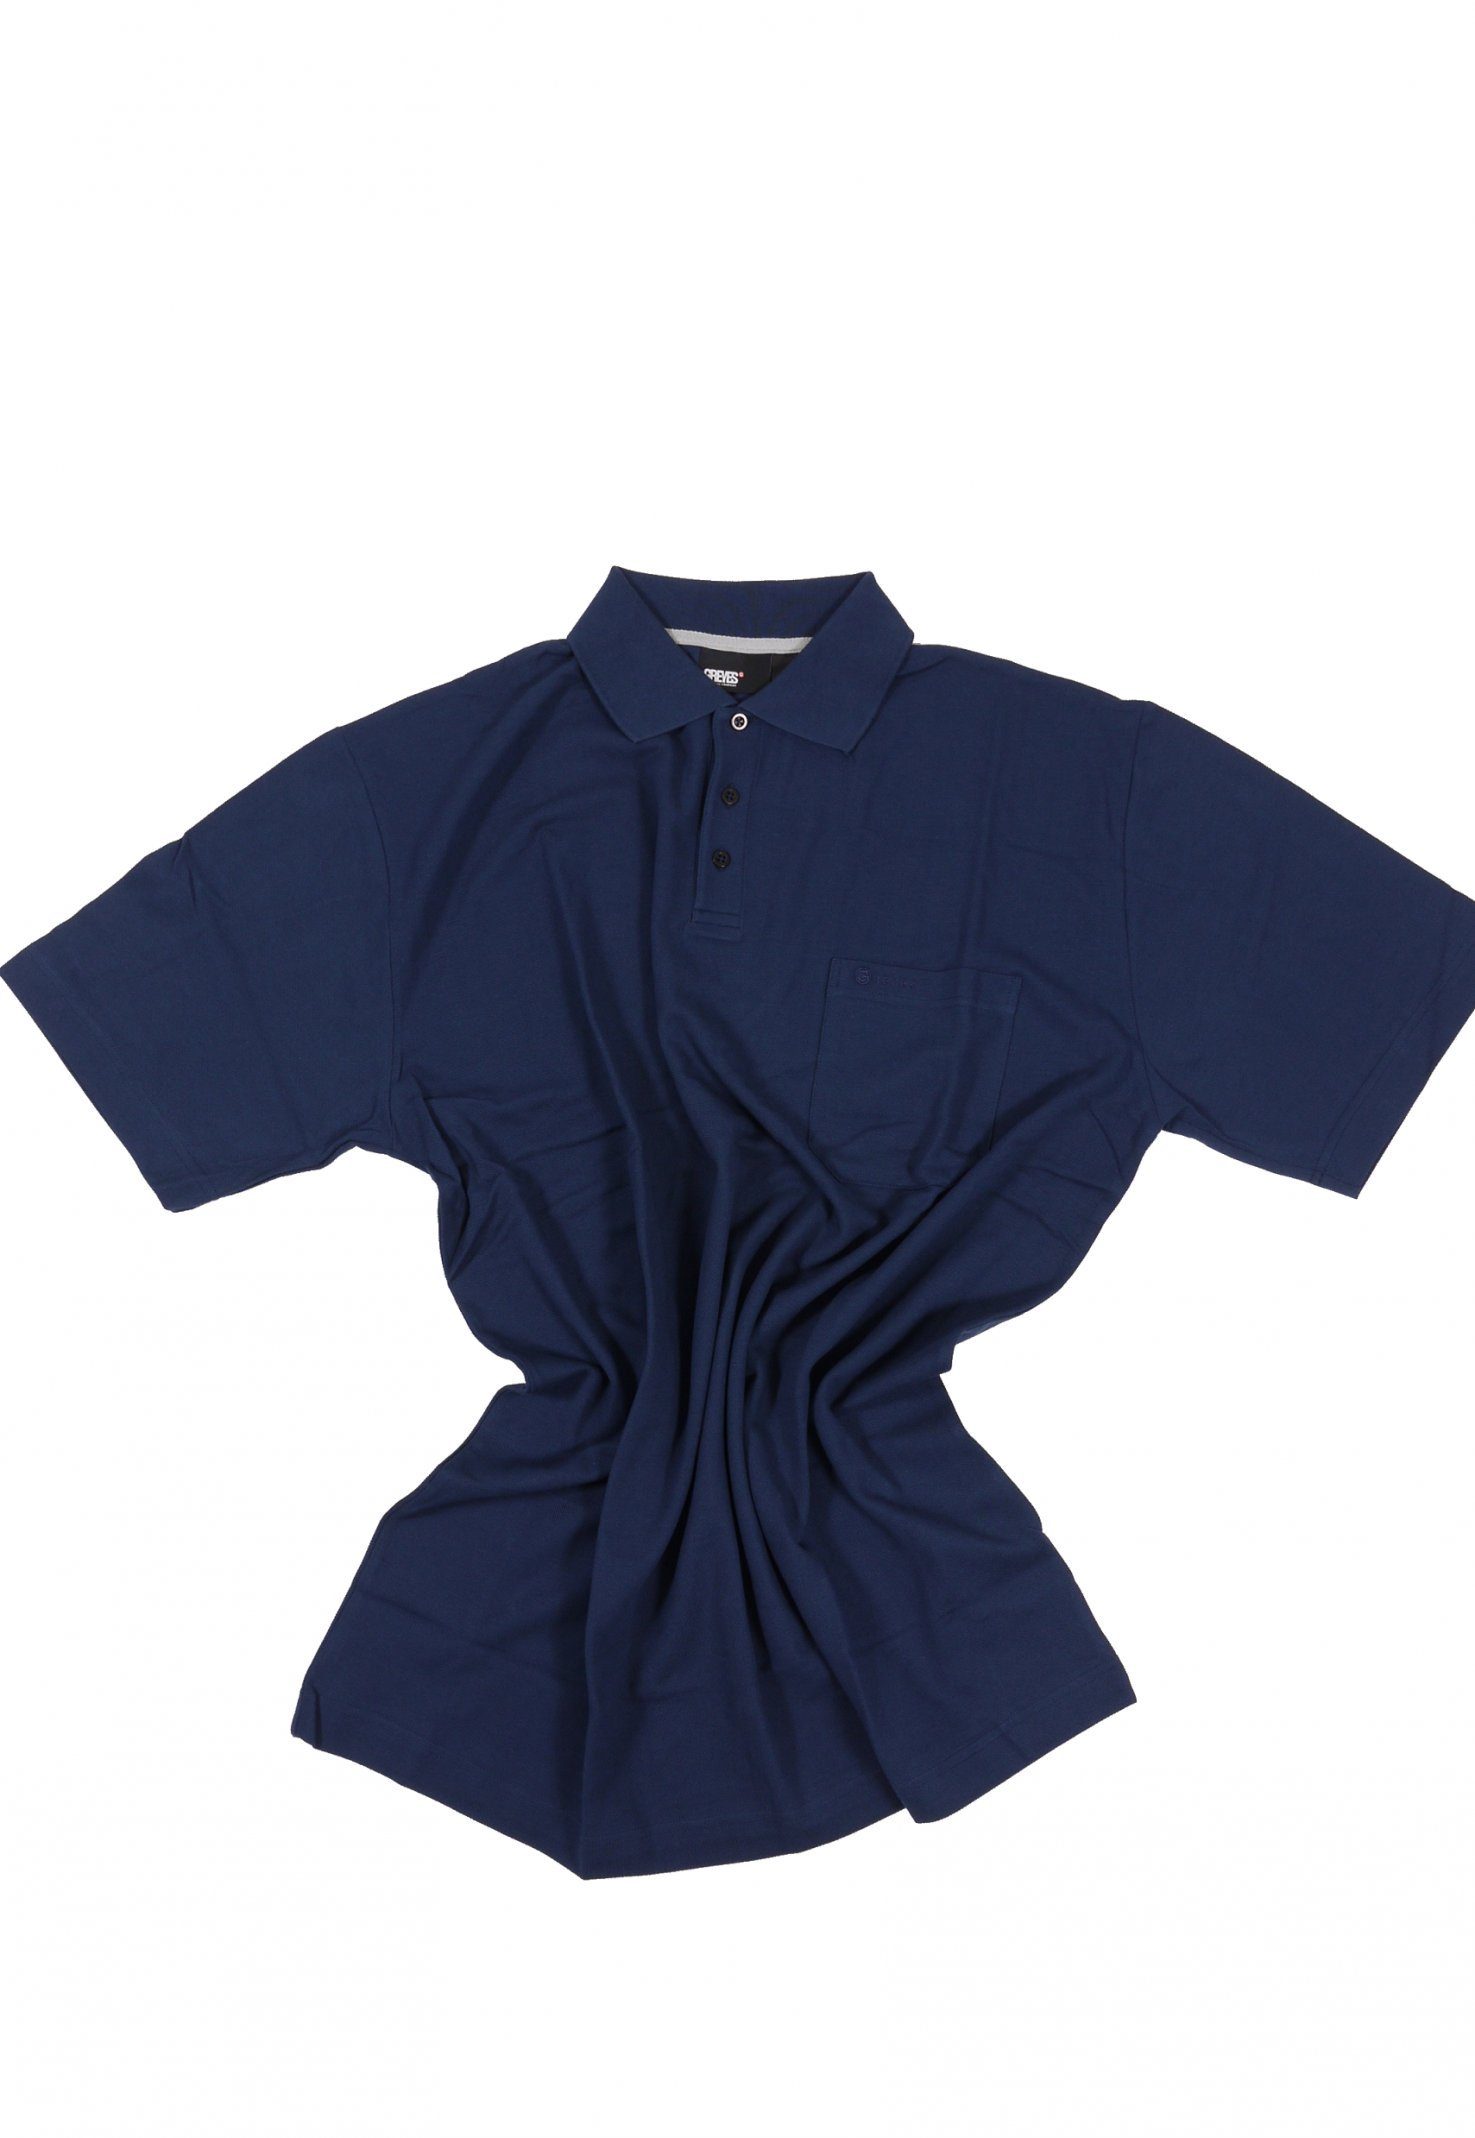 north 56 4 Poloshirt Polohemd pique in Übergröße bis 8XL von Allsize in blau